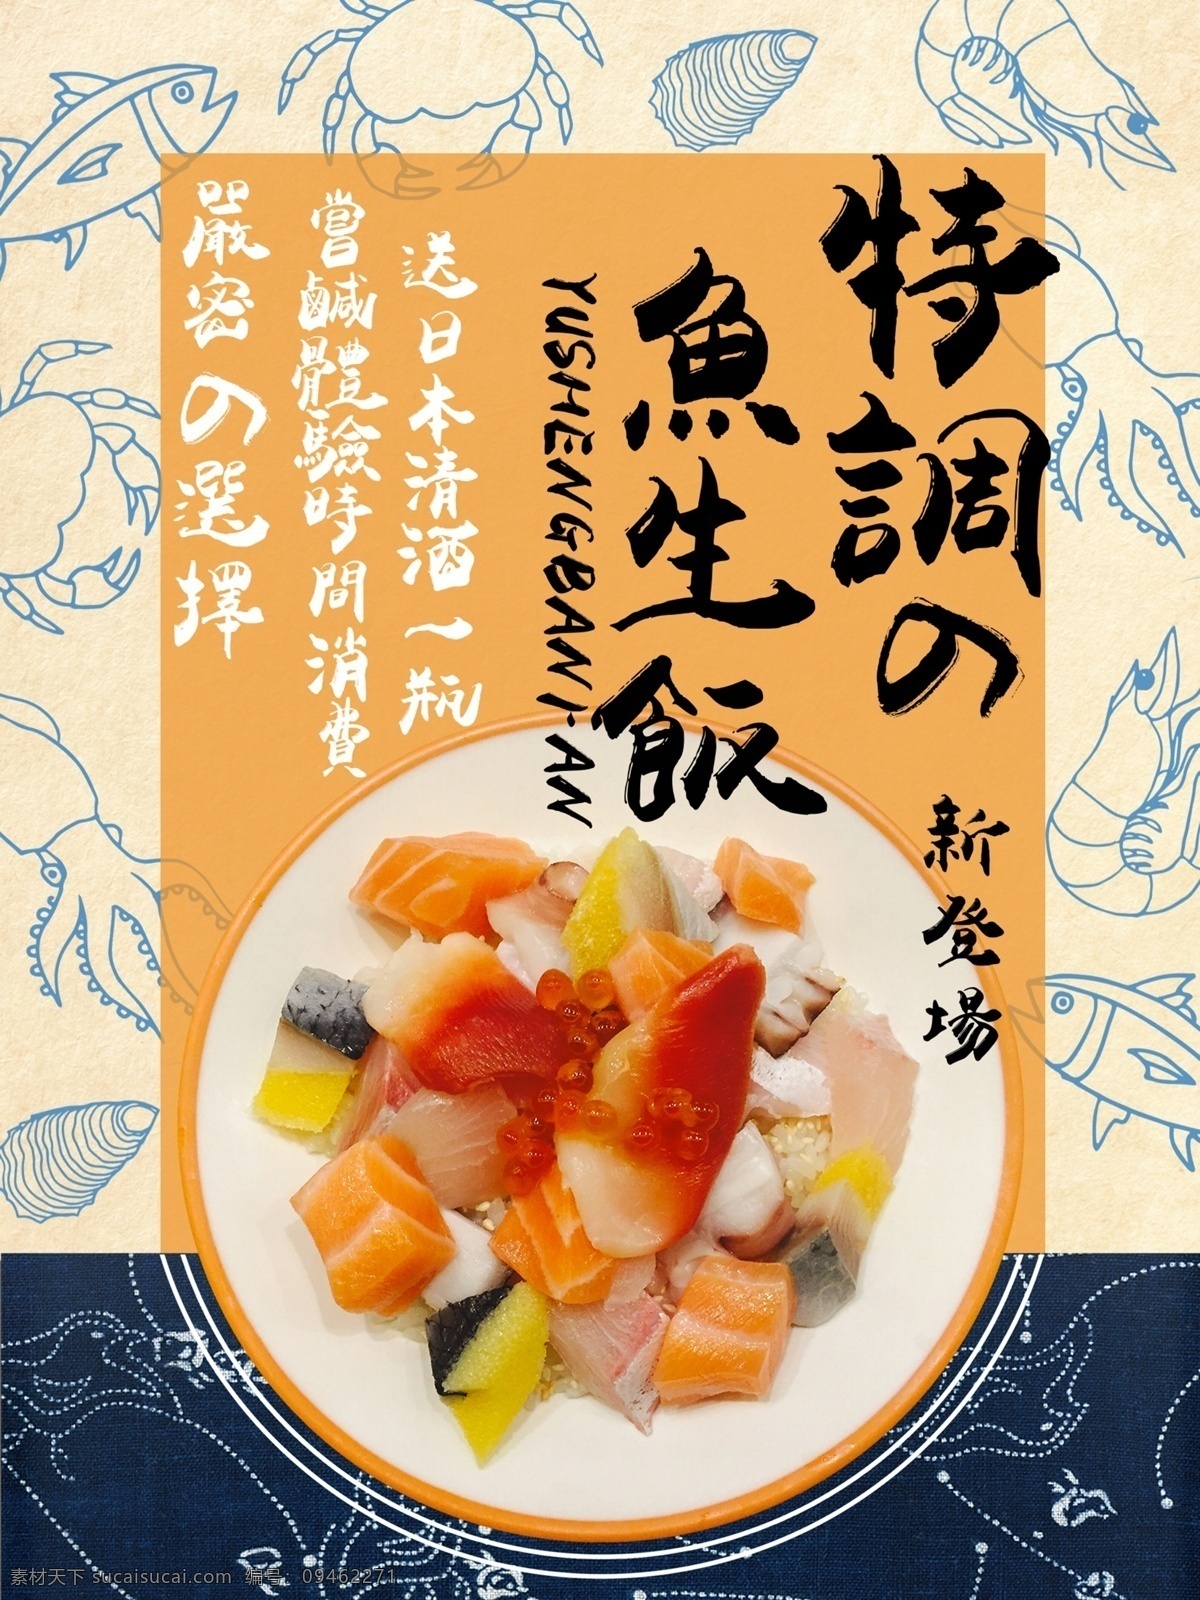 日式 风格 简约 美食 商业 海报 海鲜 寿司 鱼生